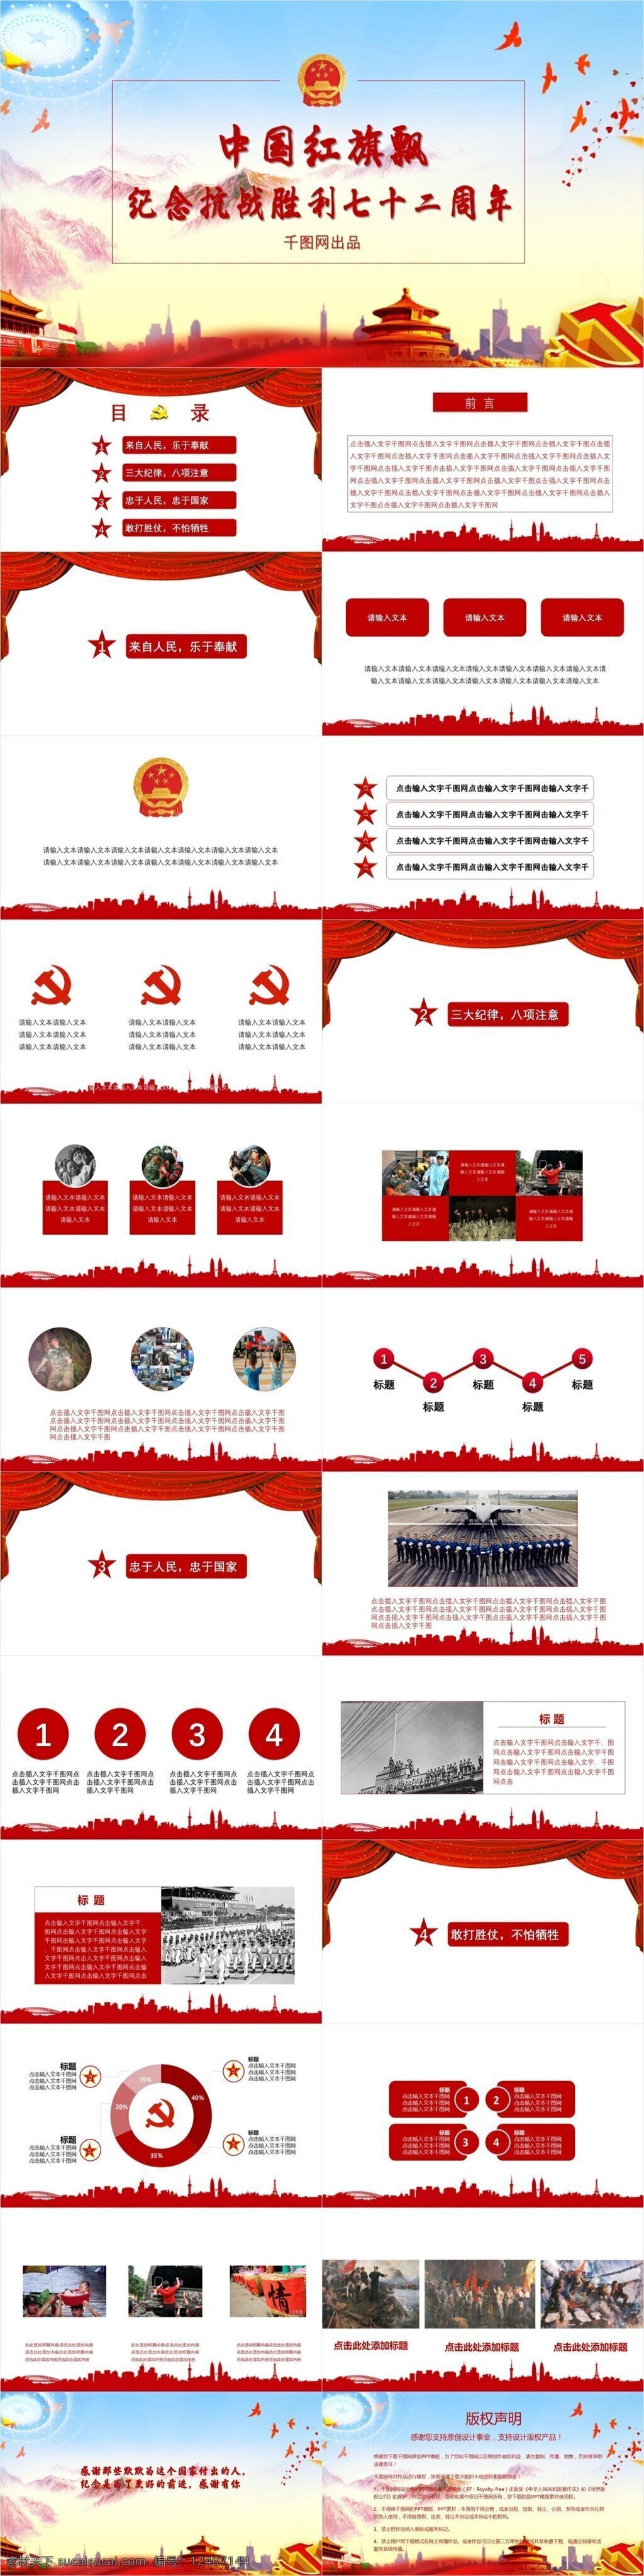 中国 红旗 飘 铁血 纪念 抗战 胜利 周年 模板 纪念革命 胜利和平 战争党建庆祝 世界历史 反法西斯纪念 投降英雄 战争 纪念日